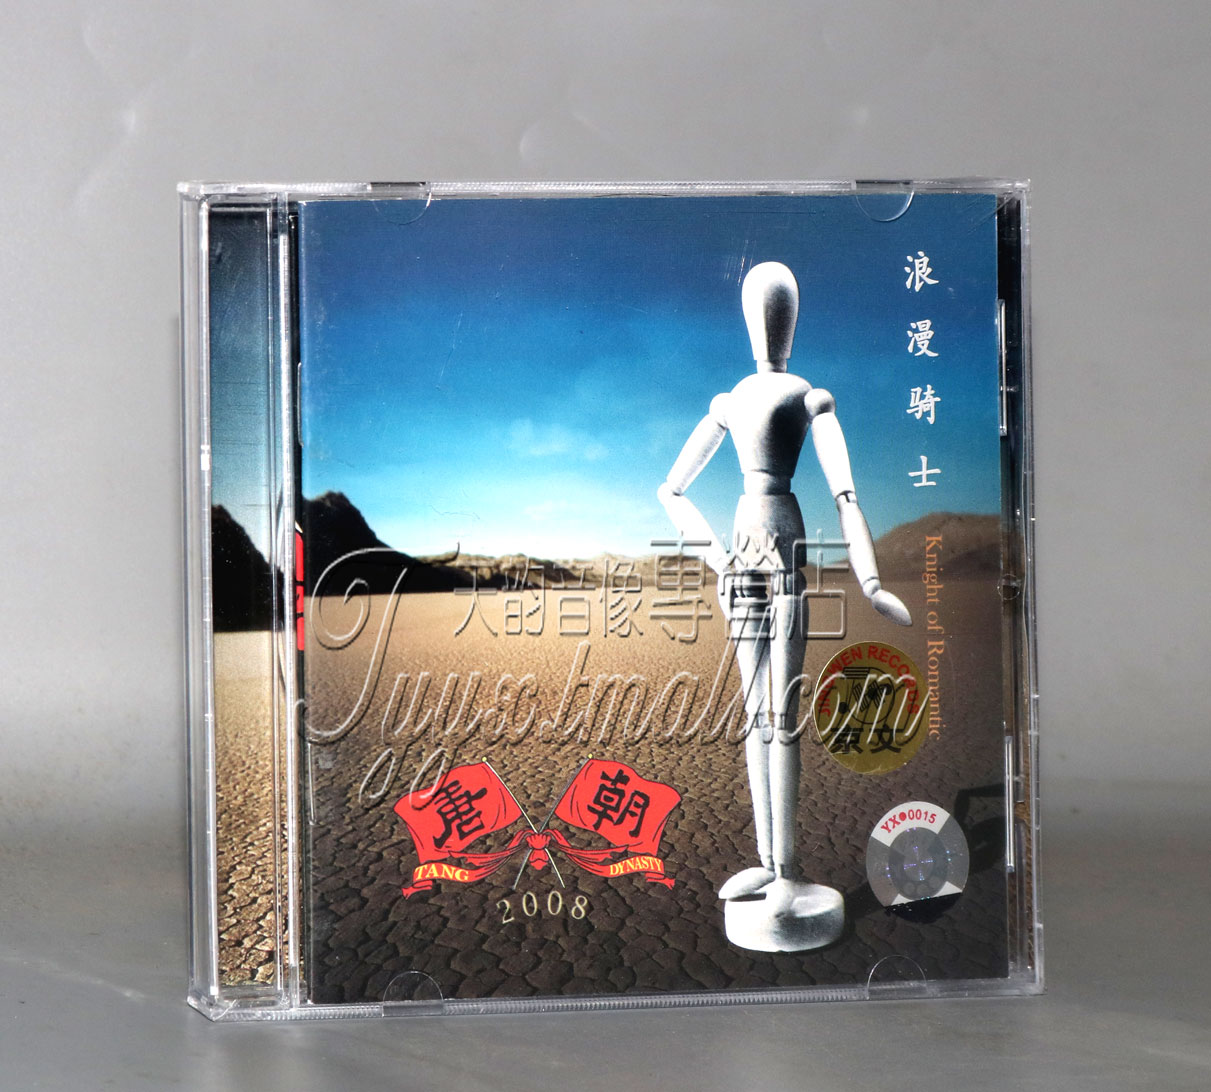 正版唱片 唐朝乐队 唐朝 浪漫骑士 CD 2008专辑